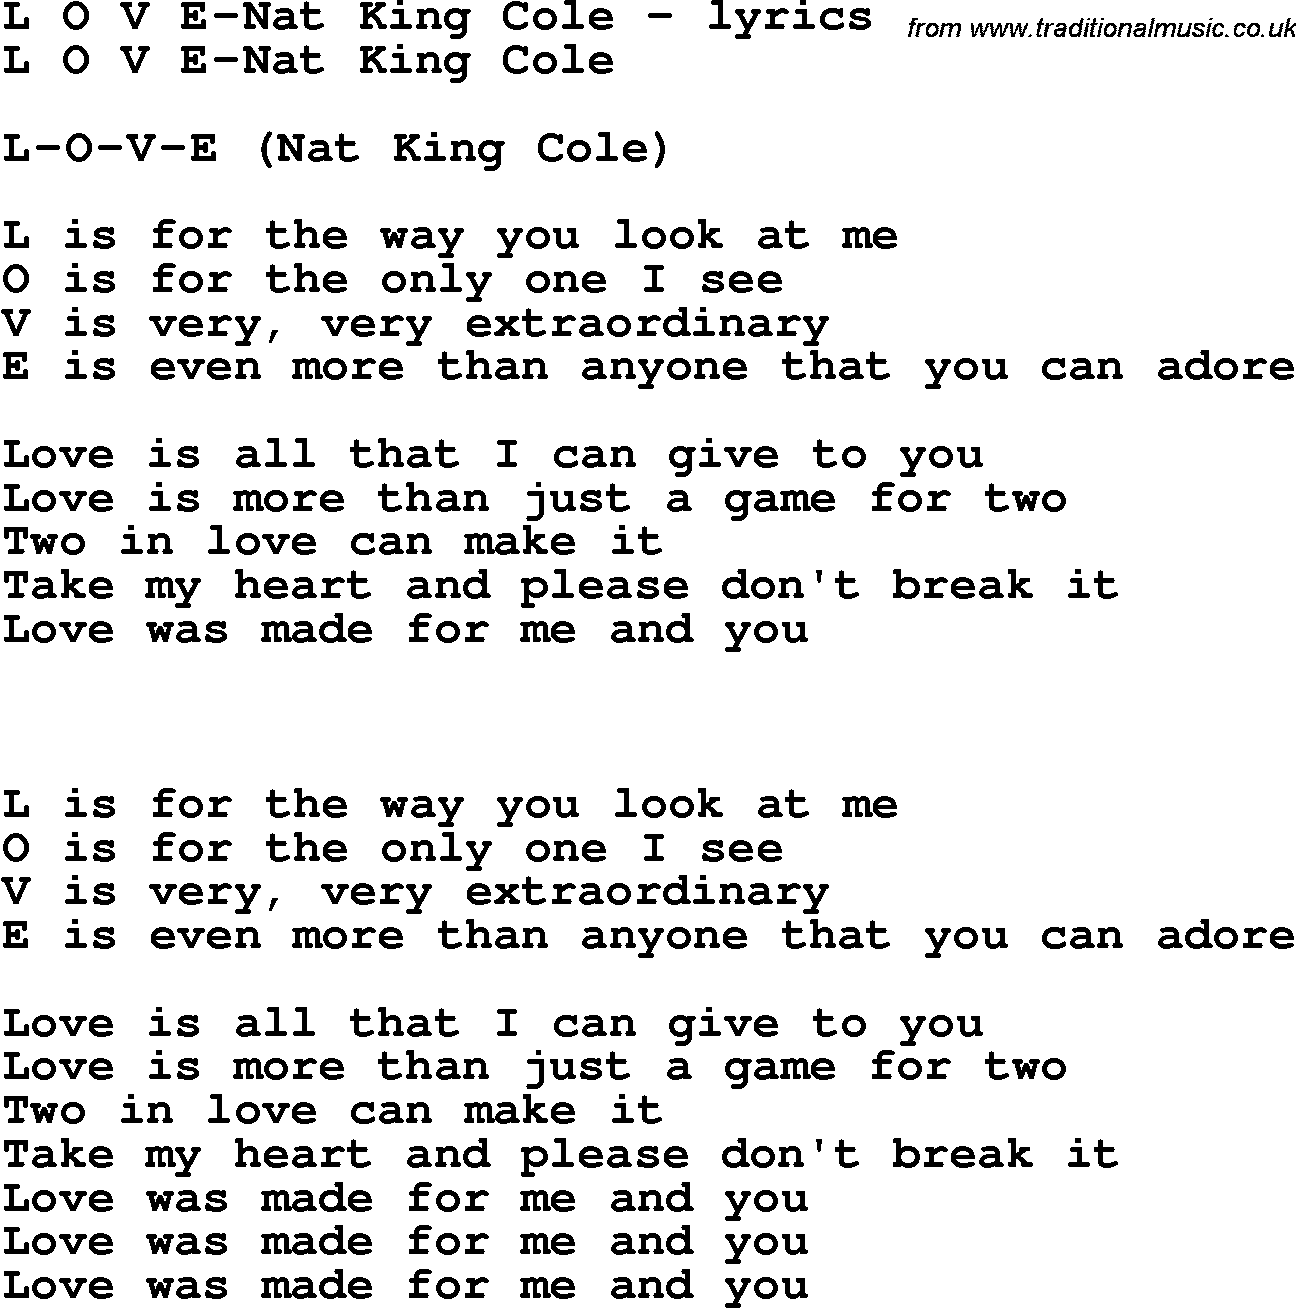 Love Song Lyrics for: L O V E-Nat King Cole